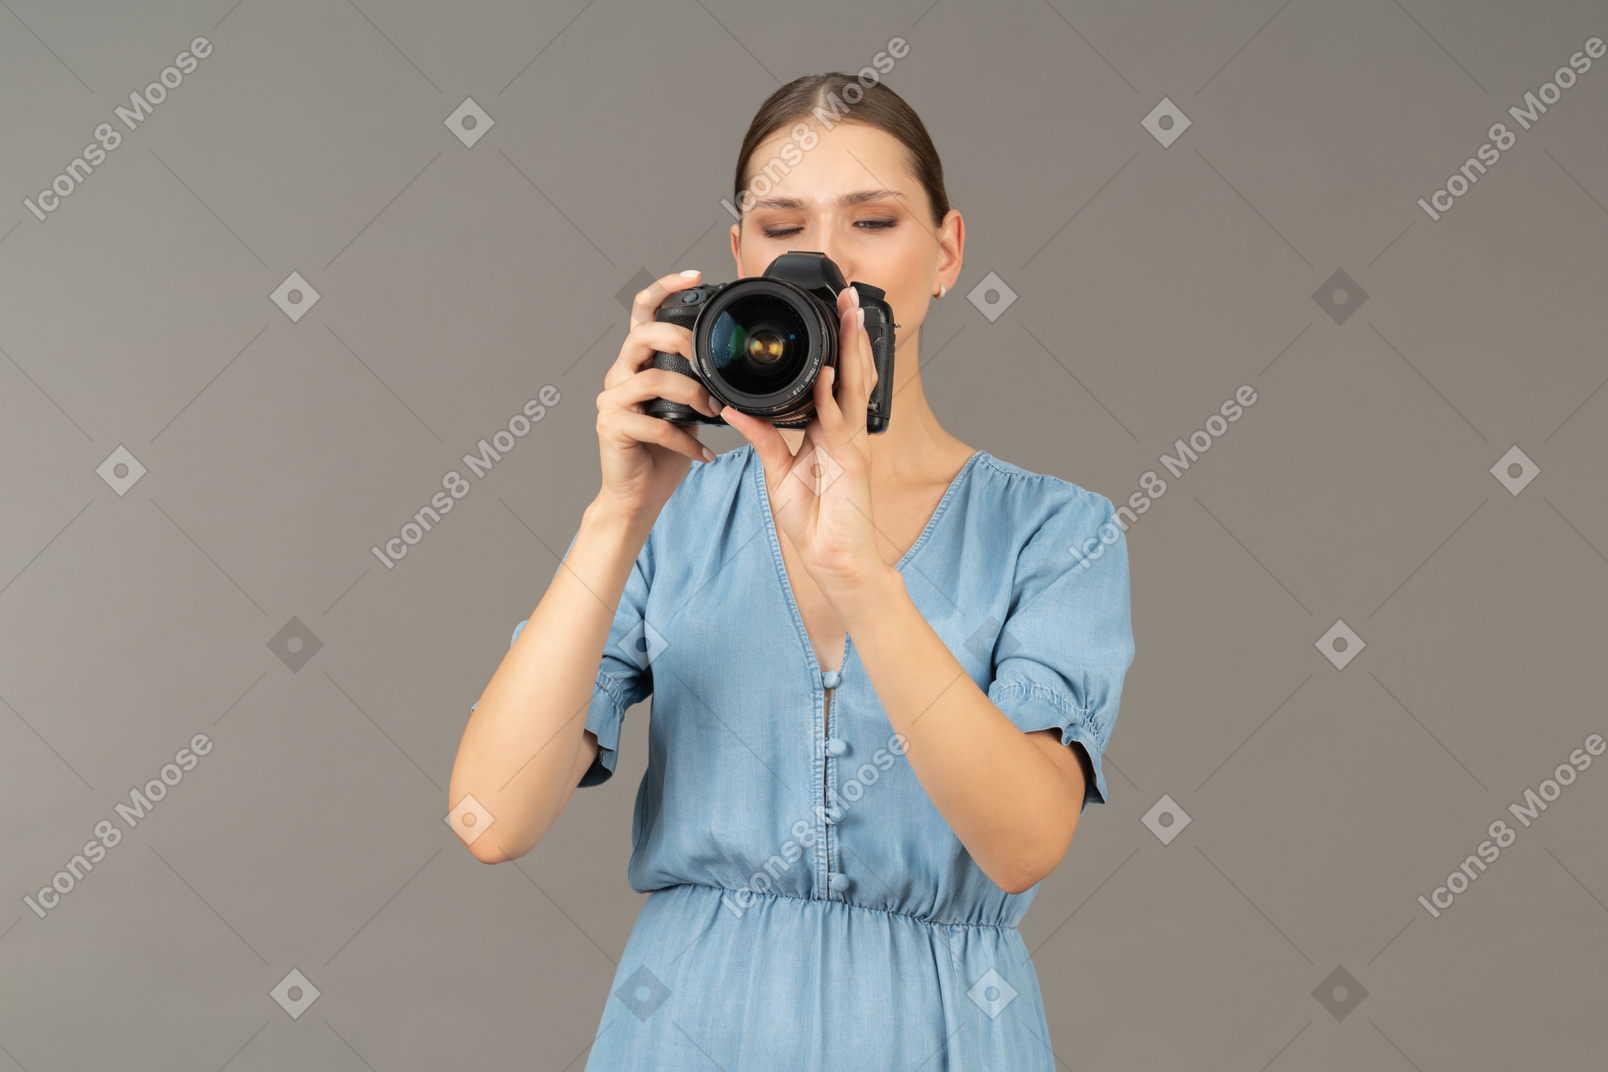 Vista frontal de uma jovem com vestido azul tirando uma foto